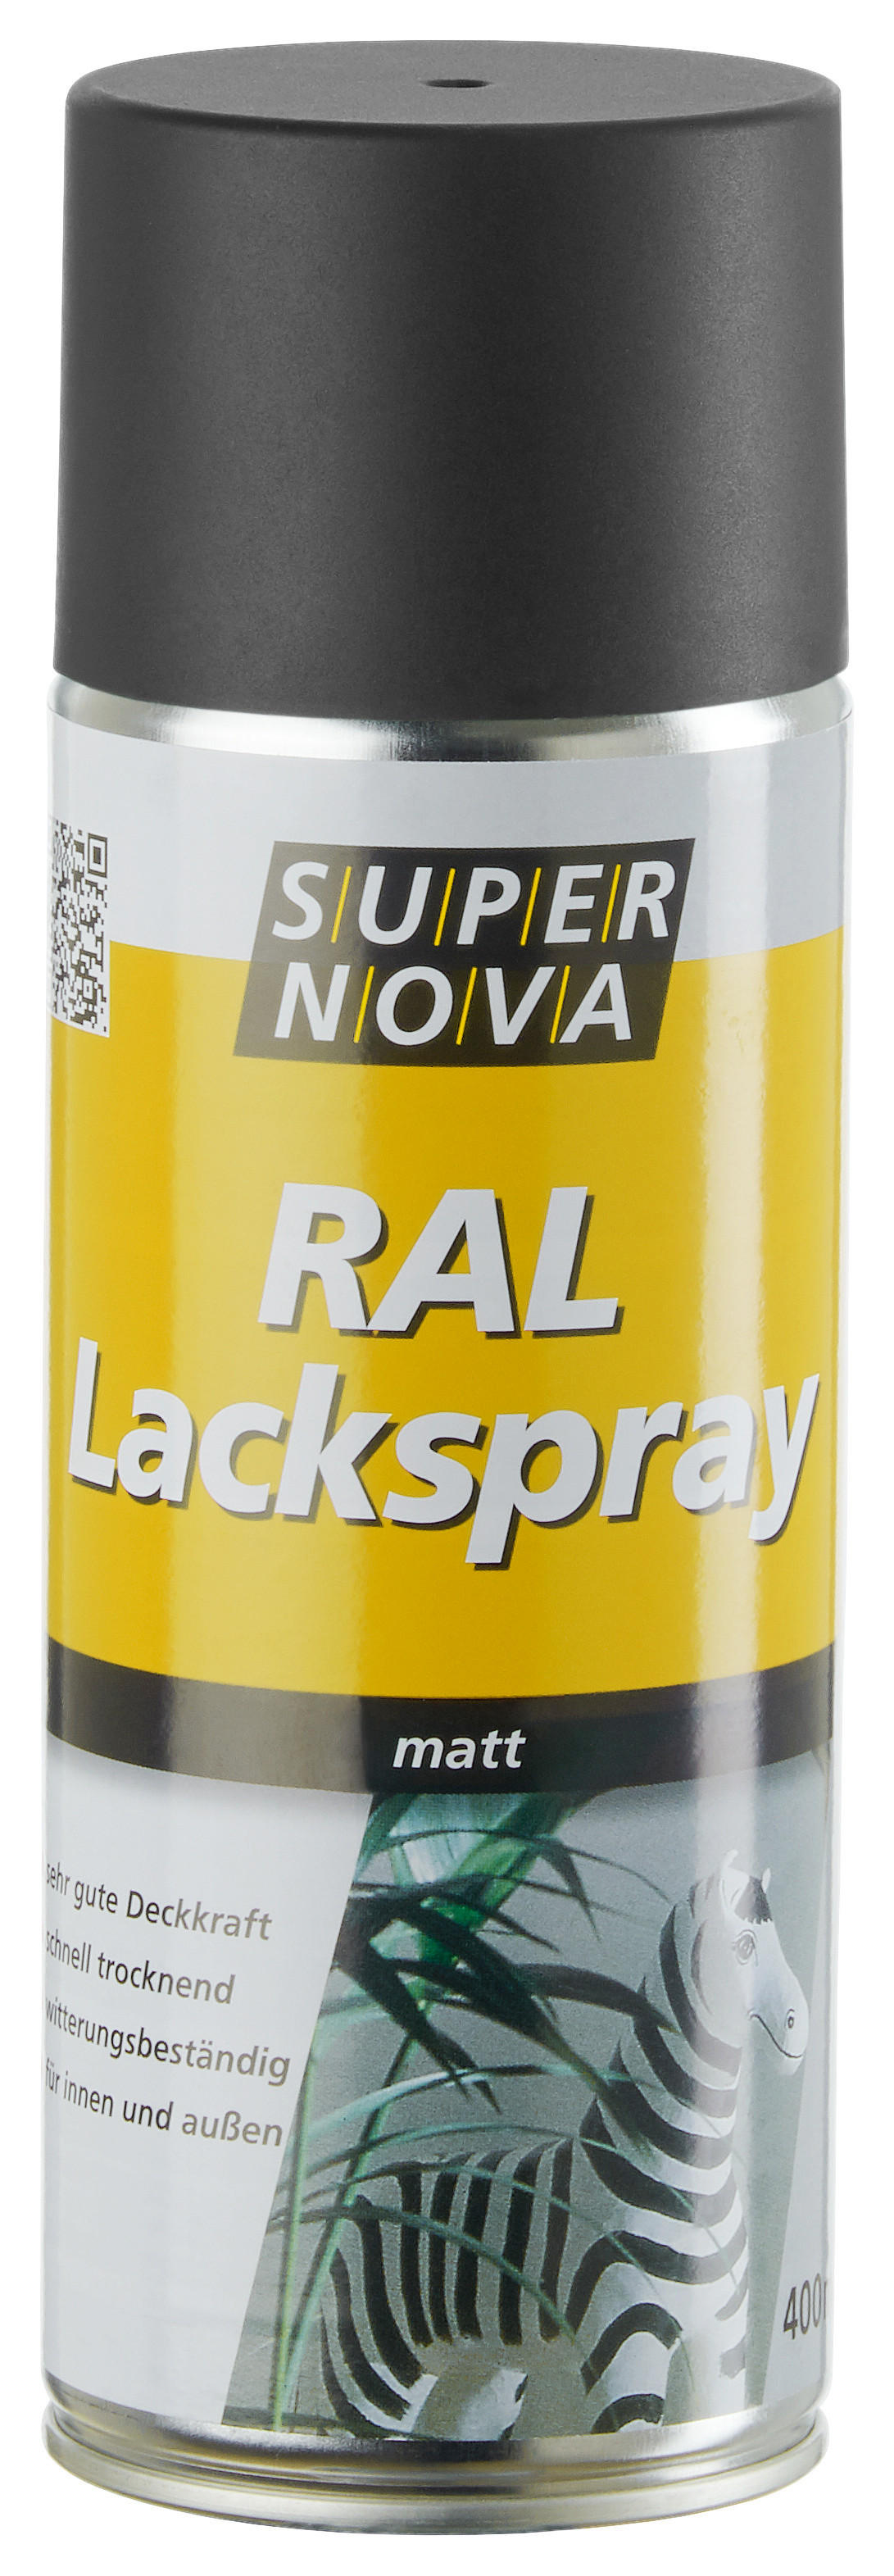 Super-Nova Lackspray tiefschwarz matt ca. 0,4 l Lackspray 400ml - tiefschwarz (400ml)